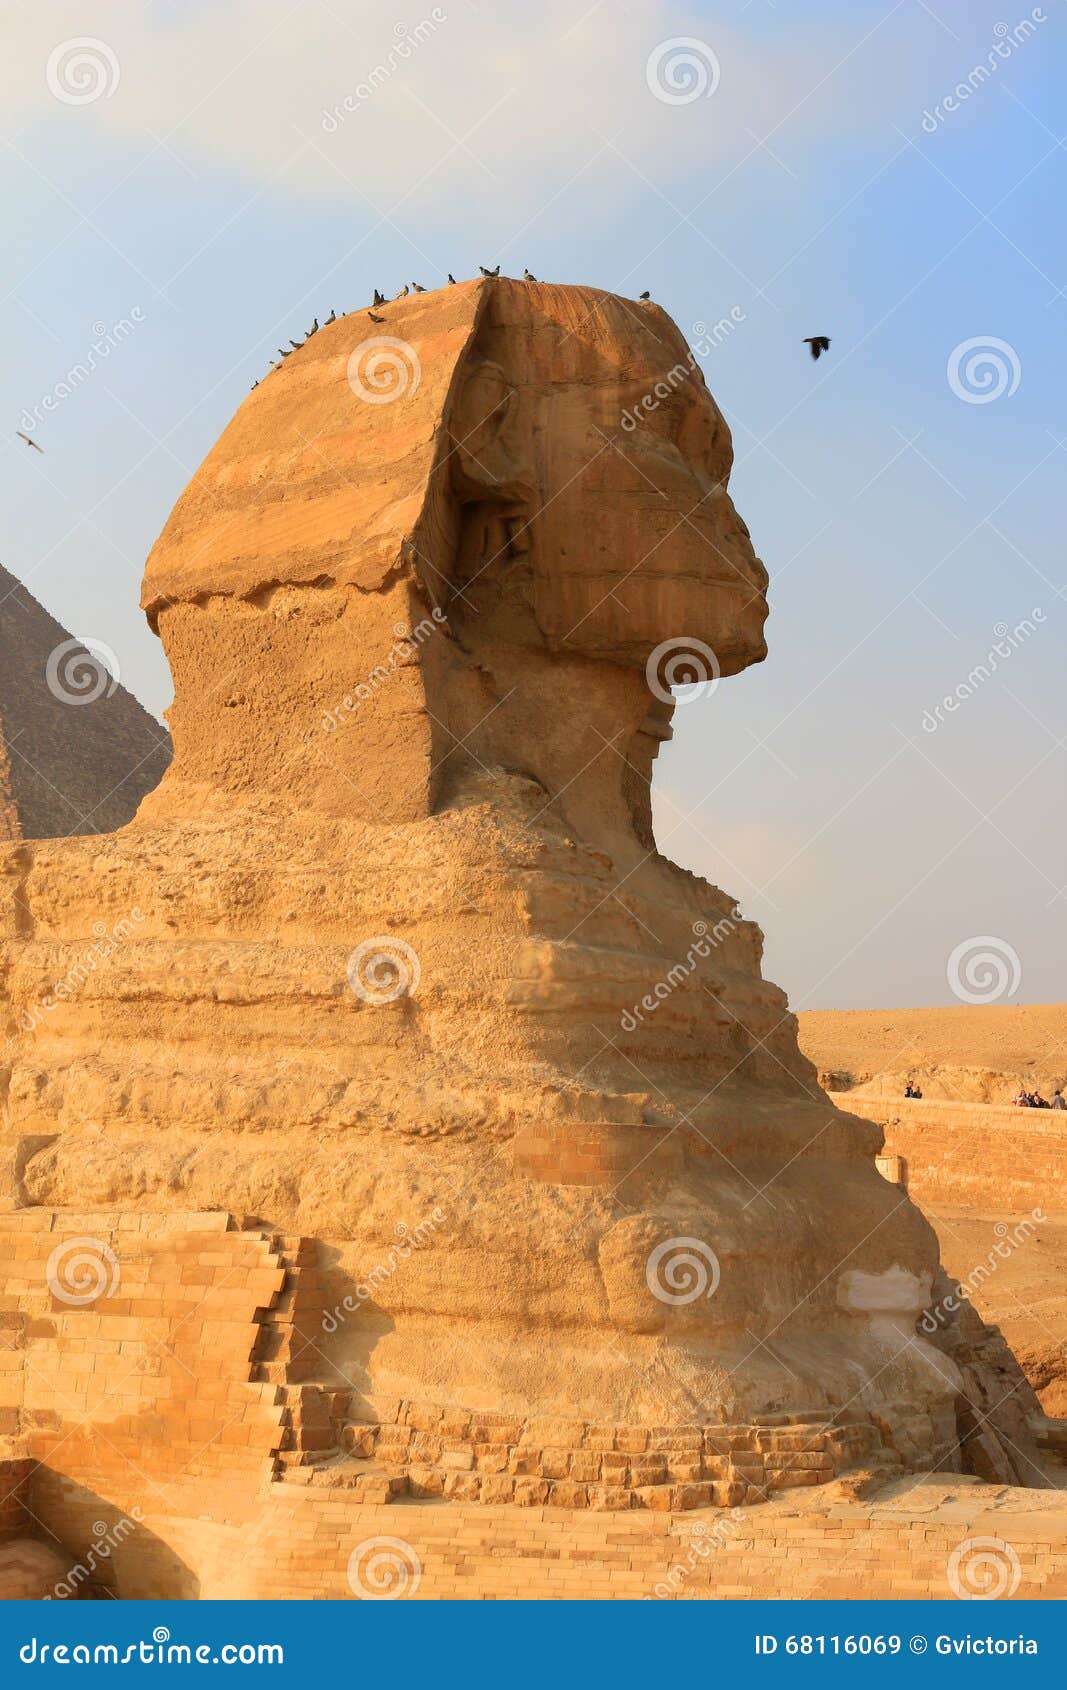 狮身人面象在吉萨棉，埃及. 与Khafre的相象的狮身人面象和一个狮子身体在吉萨棉在埃及